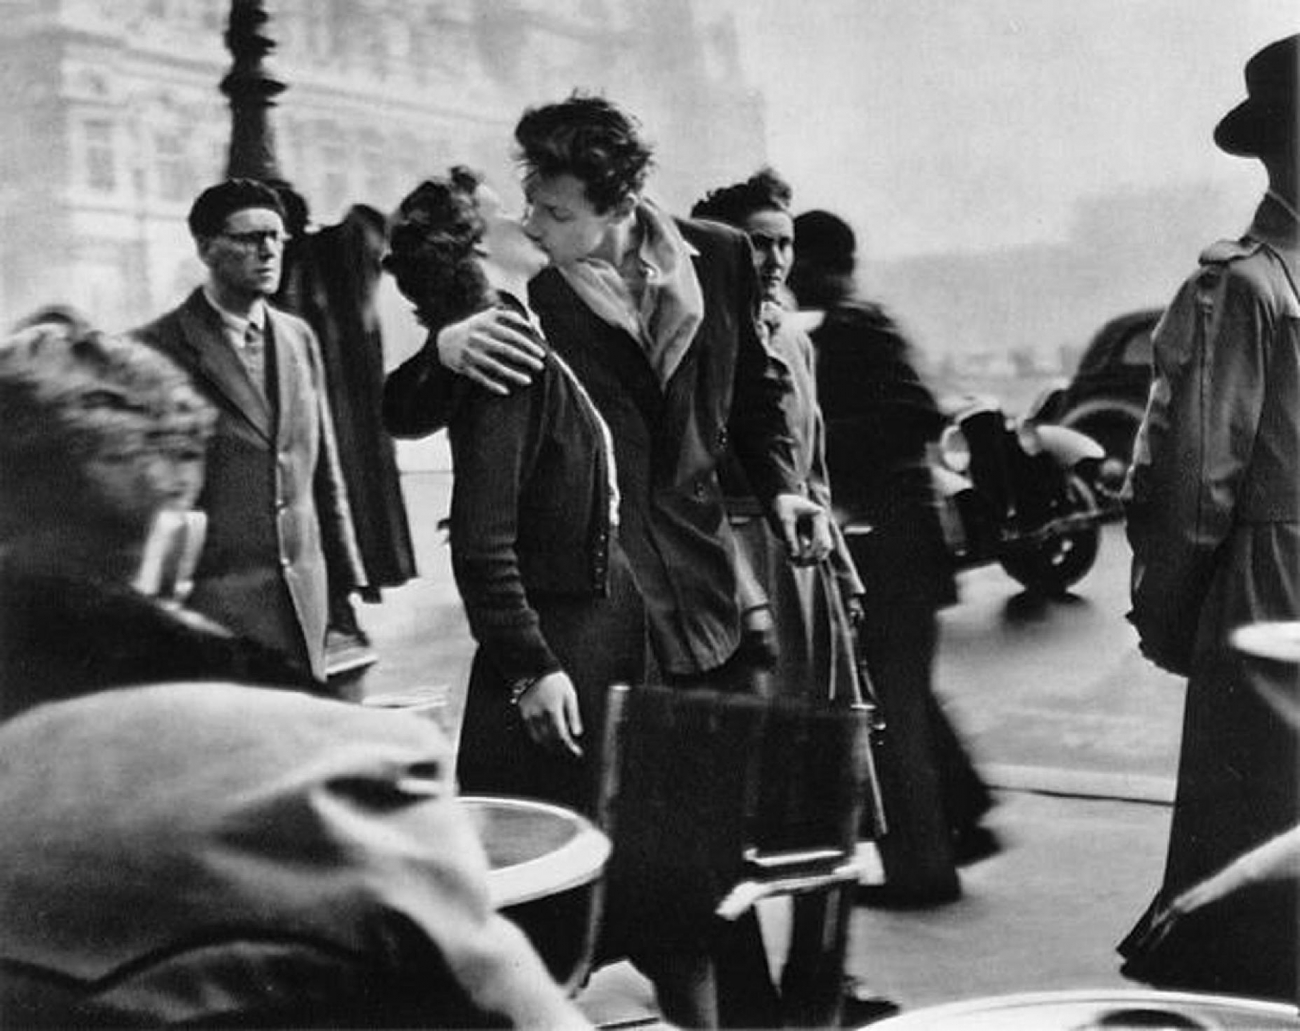 Robert prozkoumal Paříž se svým fotoaparátem křížem krážem. A co se týče jeho nejslavnějšího snímku, hodně se o něm diskutovalo - nakonec se zjistilo, že šlo o najaté, naaranžované herce. Ale i tak snímku nikdo neupře krásu